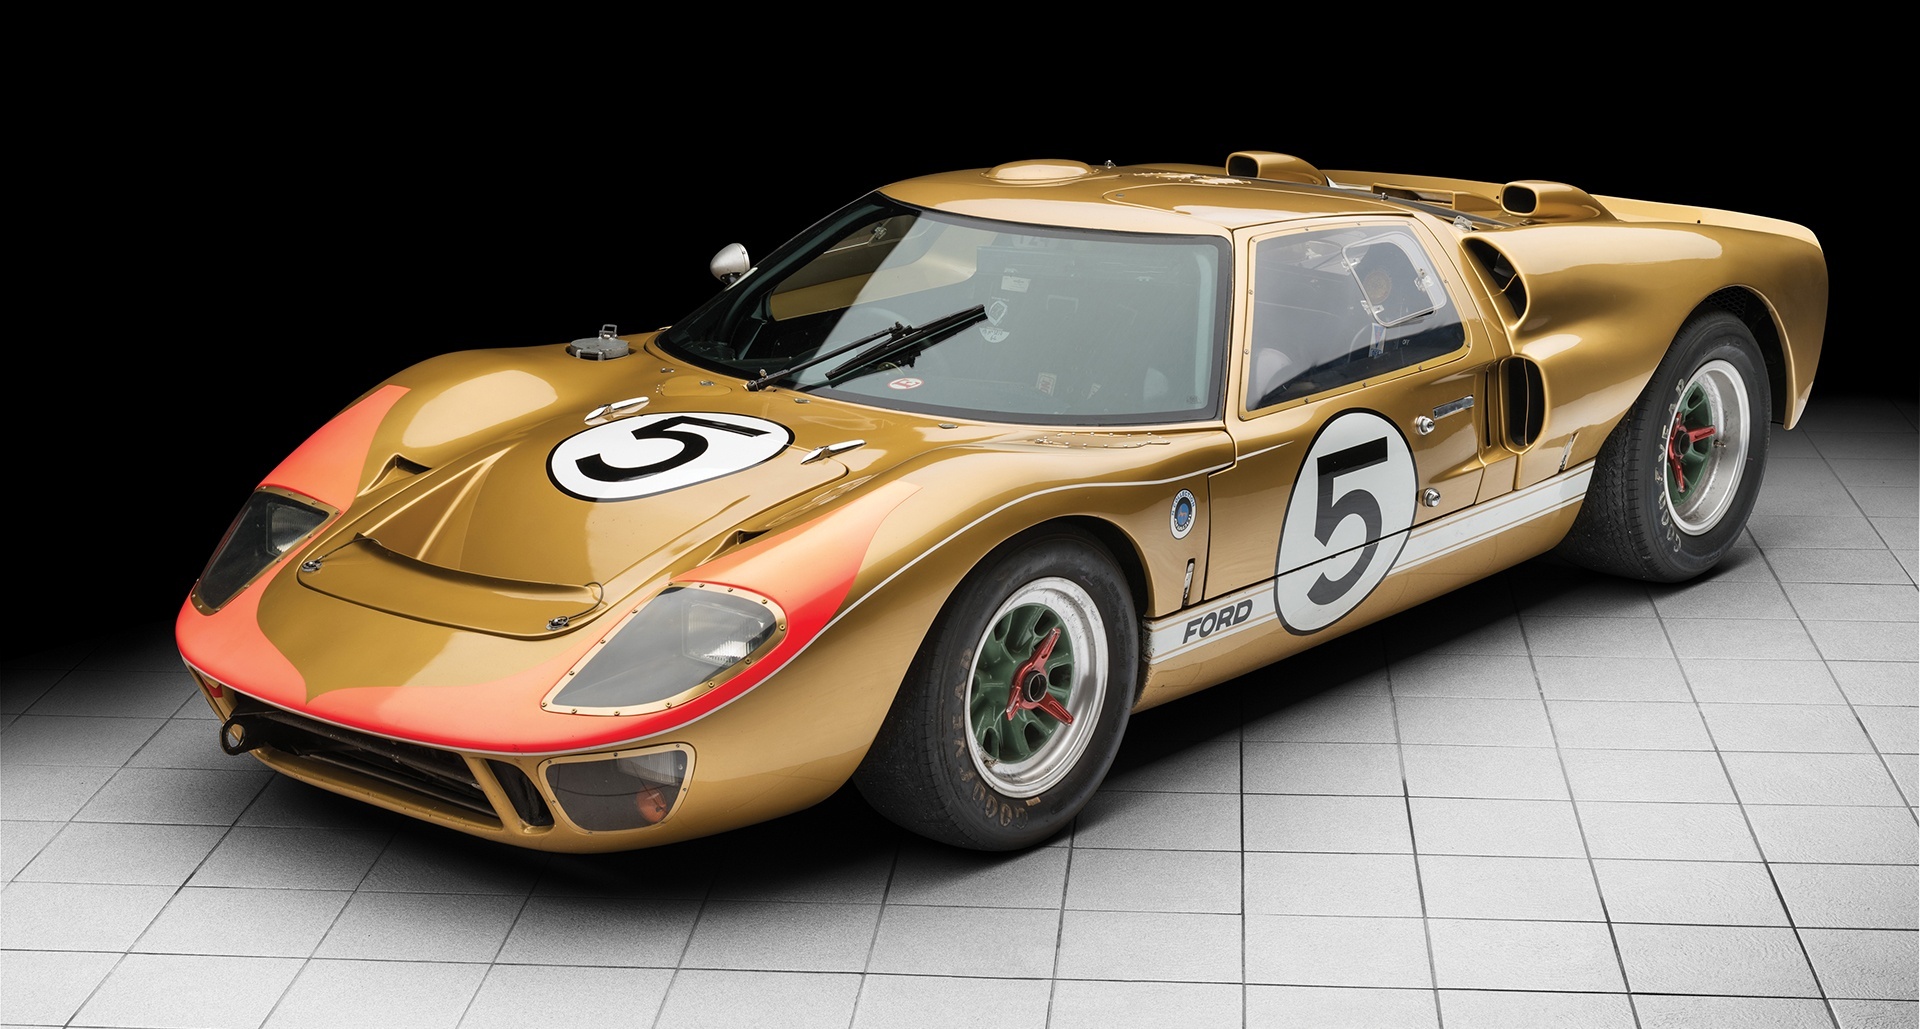 1966 Ford GT40 Le Mans racer